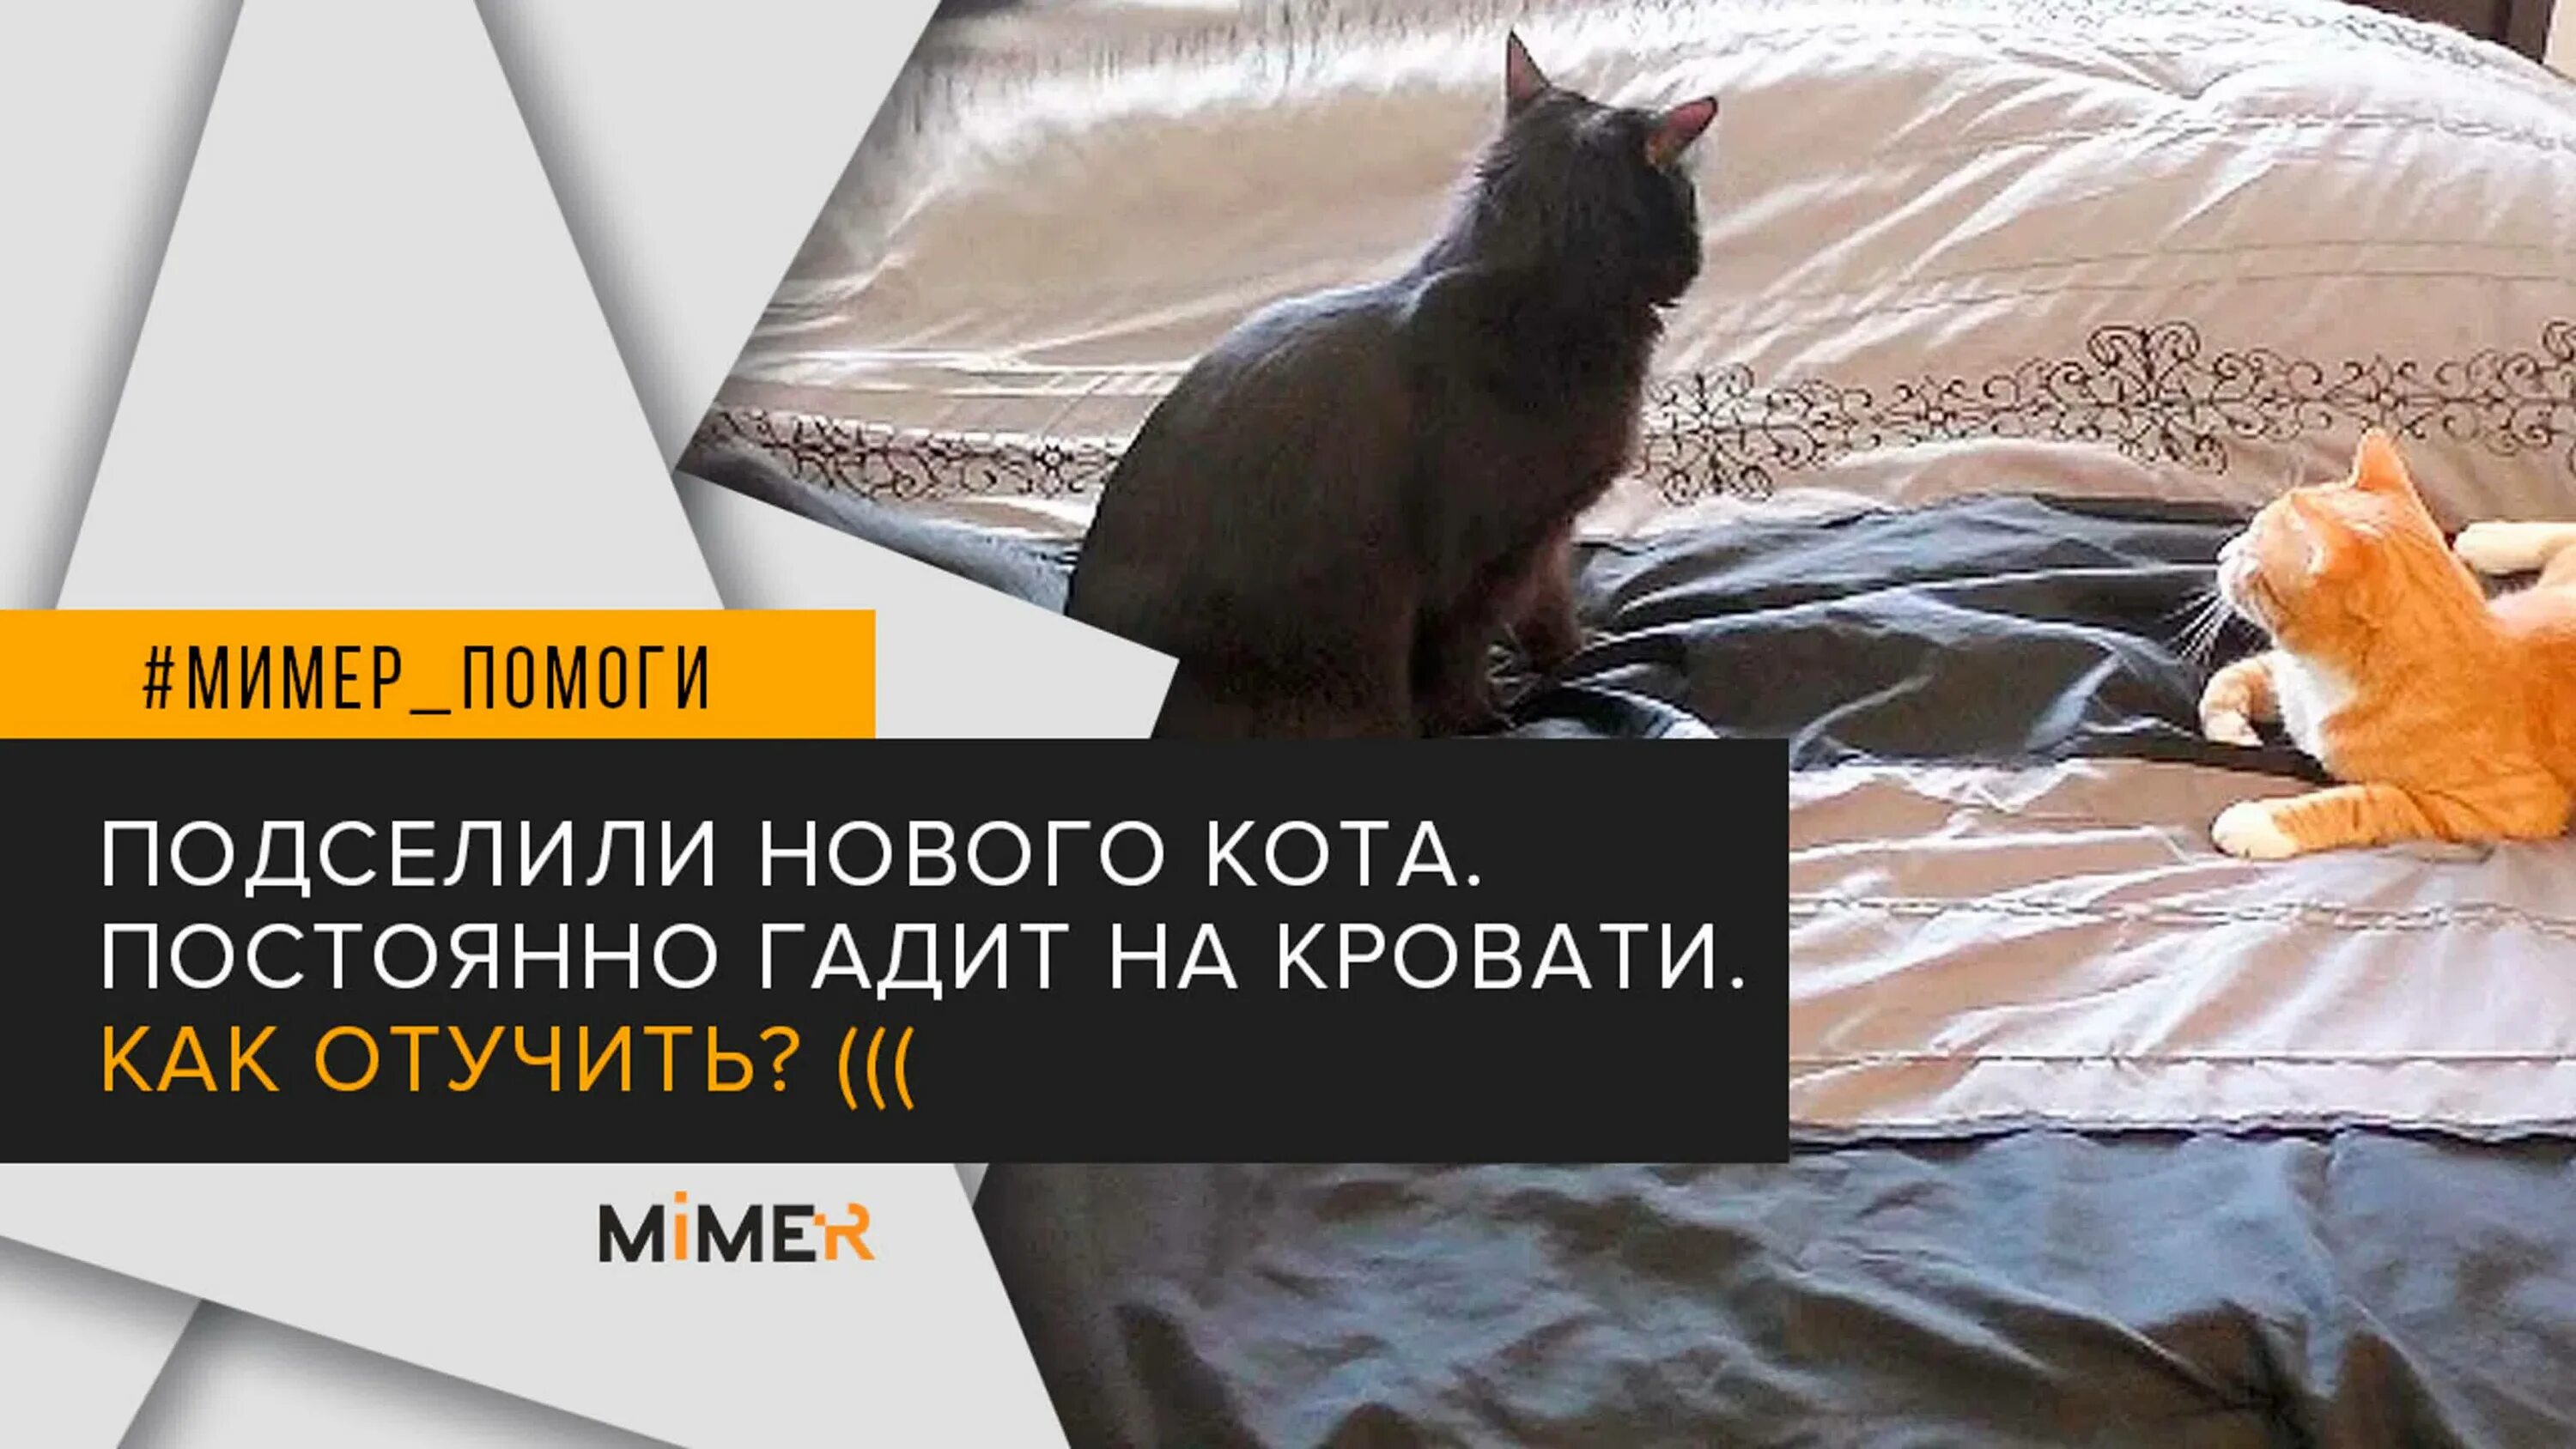 Кошка гадит на кровать что делать. Котик гадит на постель. Котенок нагадил на кровать. Отучить кошку гадить на кровать. Как отучить котенка гадить на постель.